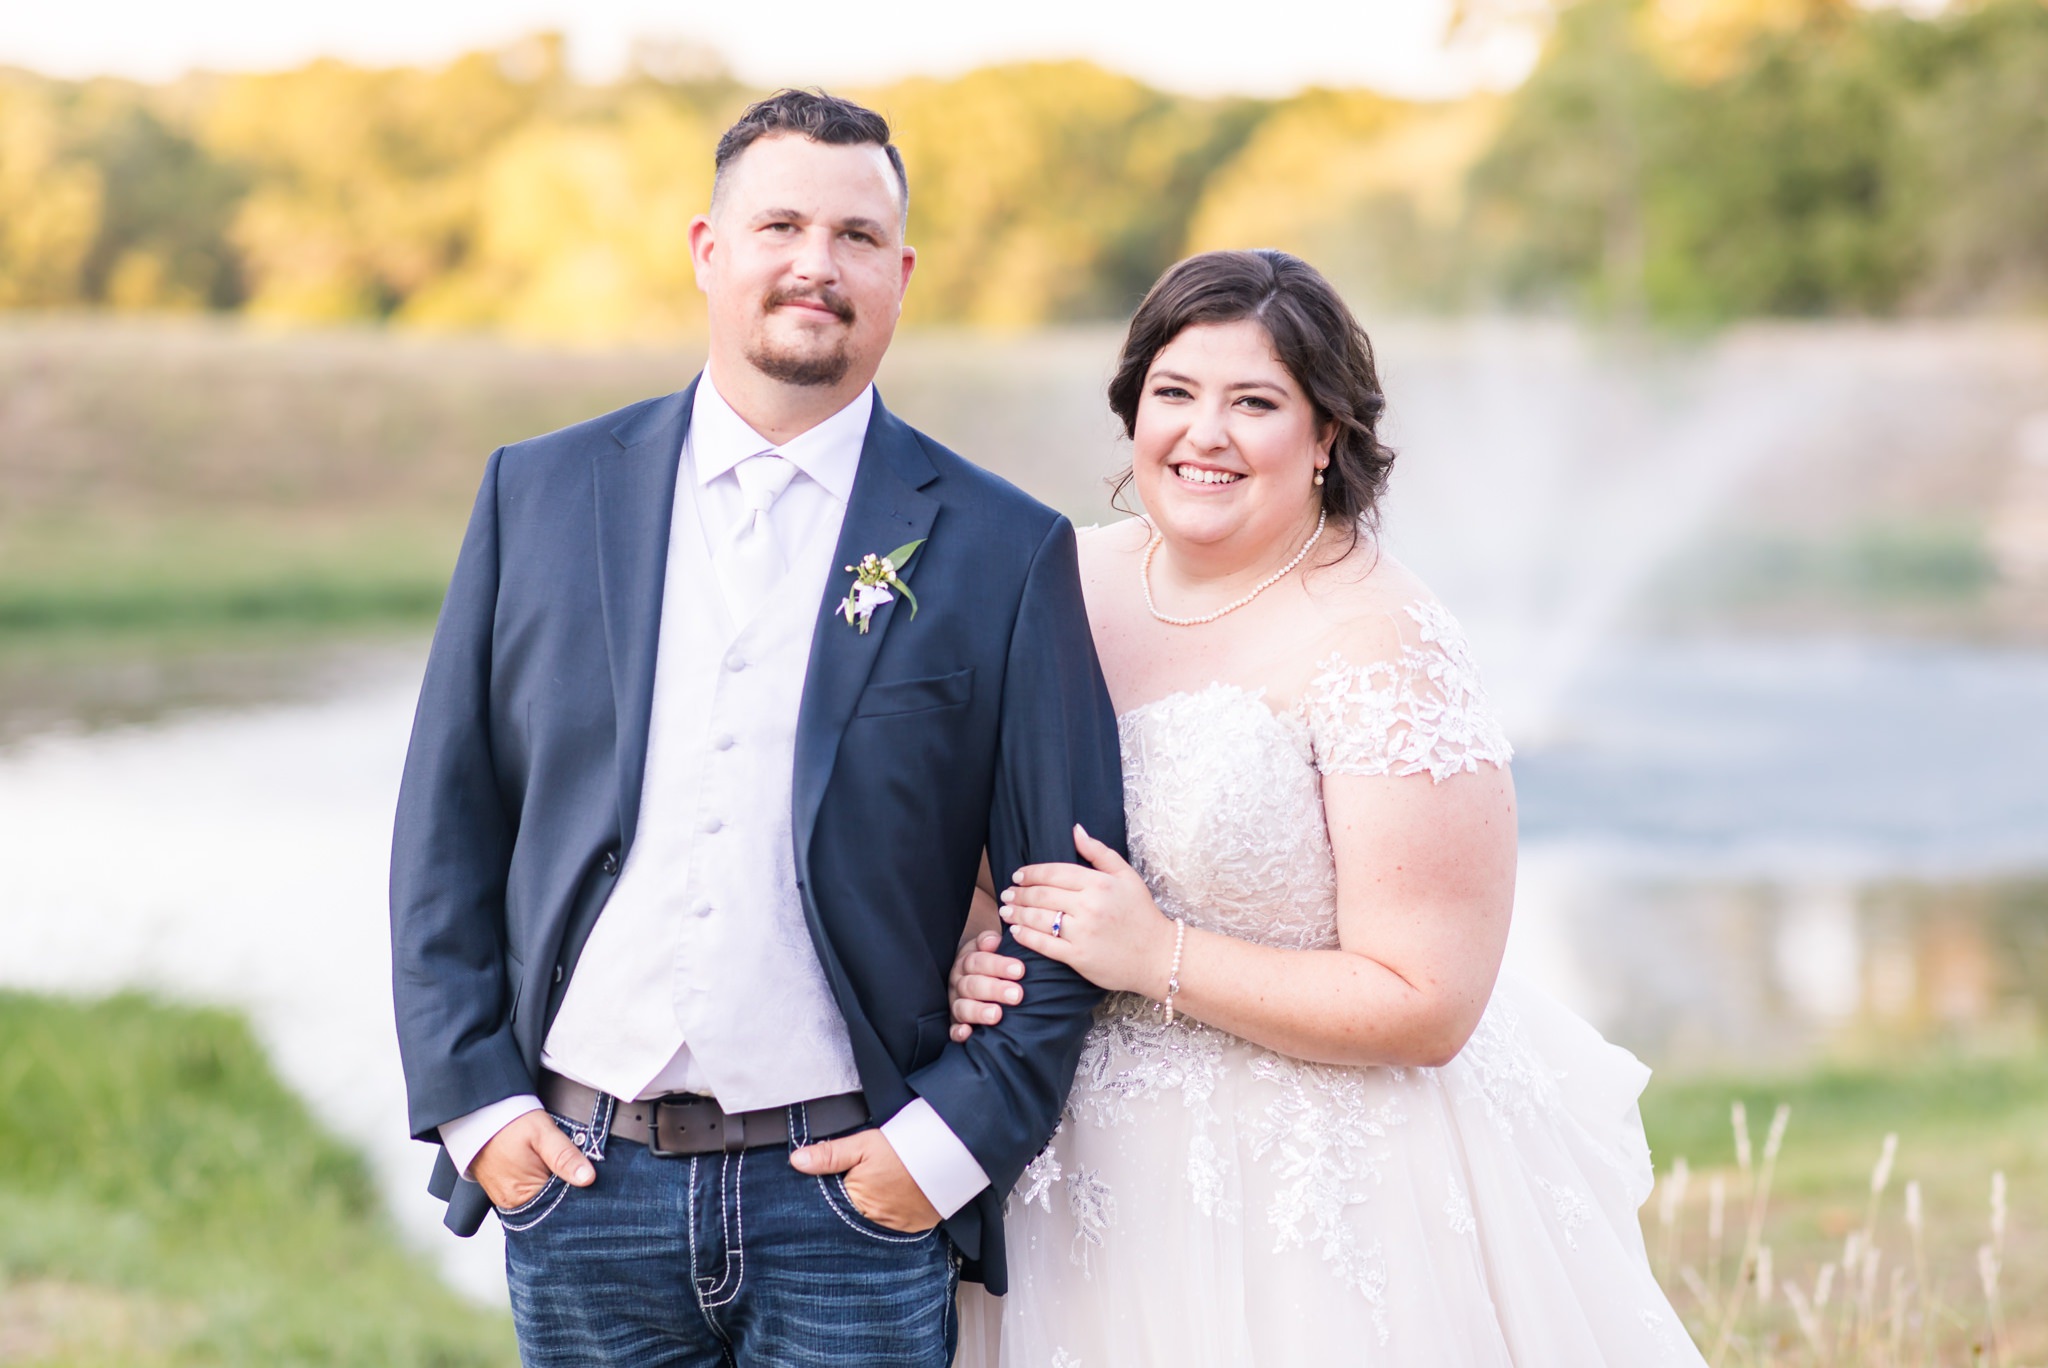 A Royal Purple and Orange Wedding at Kendall Point in Boerne, TX by Dawn Elizabeth Studios, Boerne Wedding Photographer